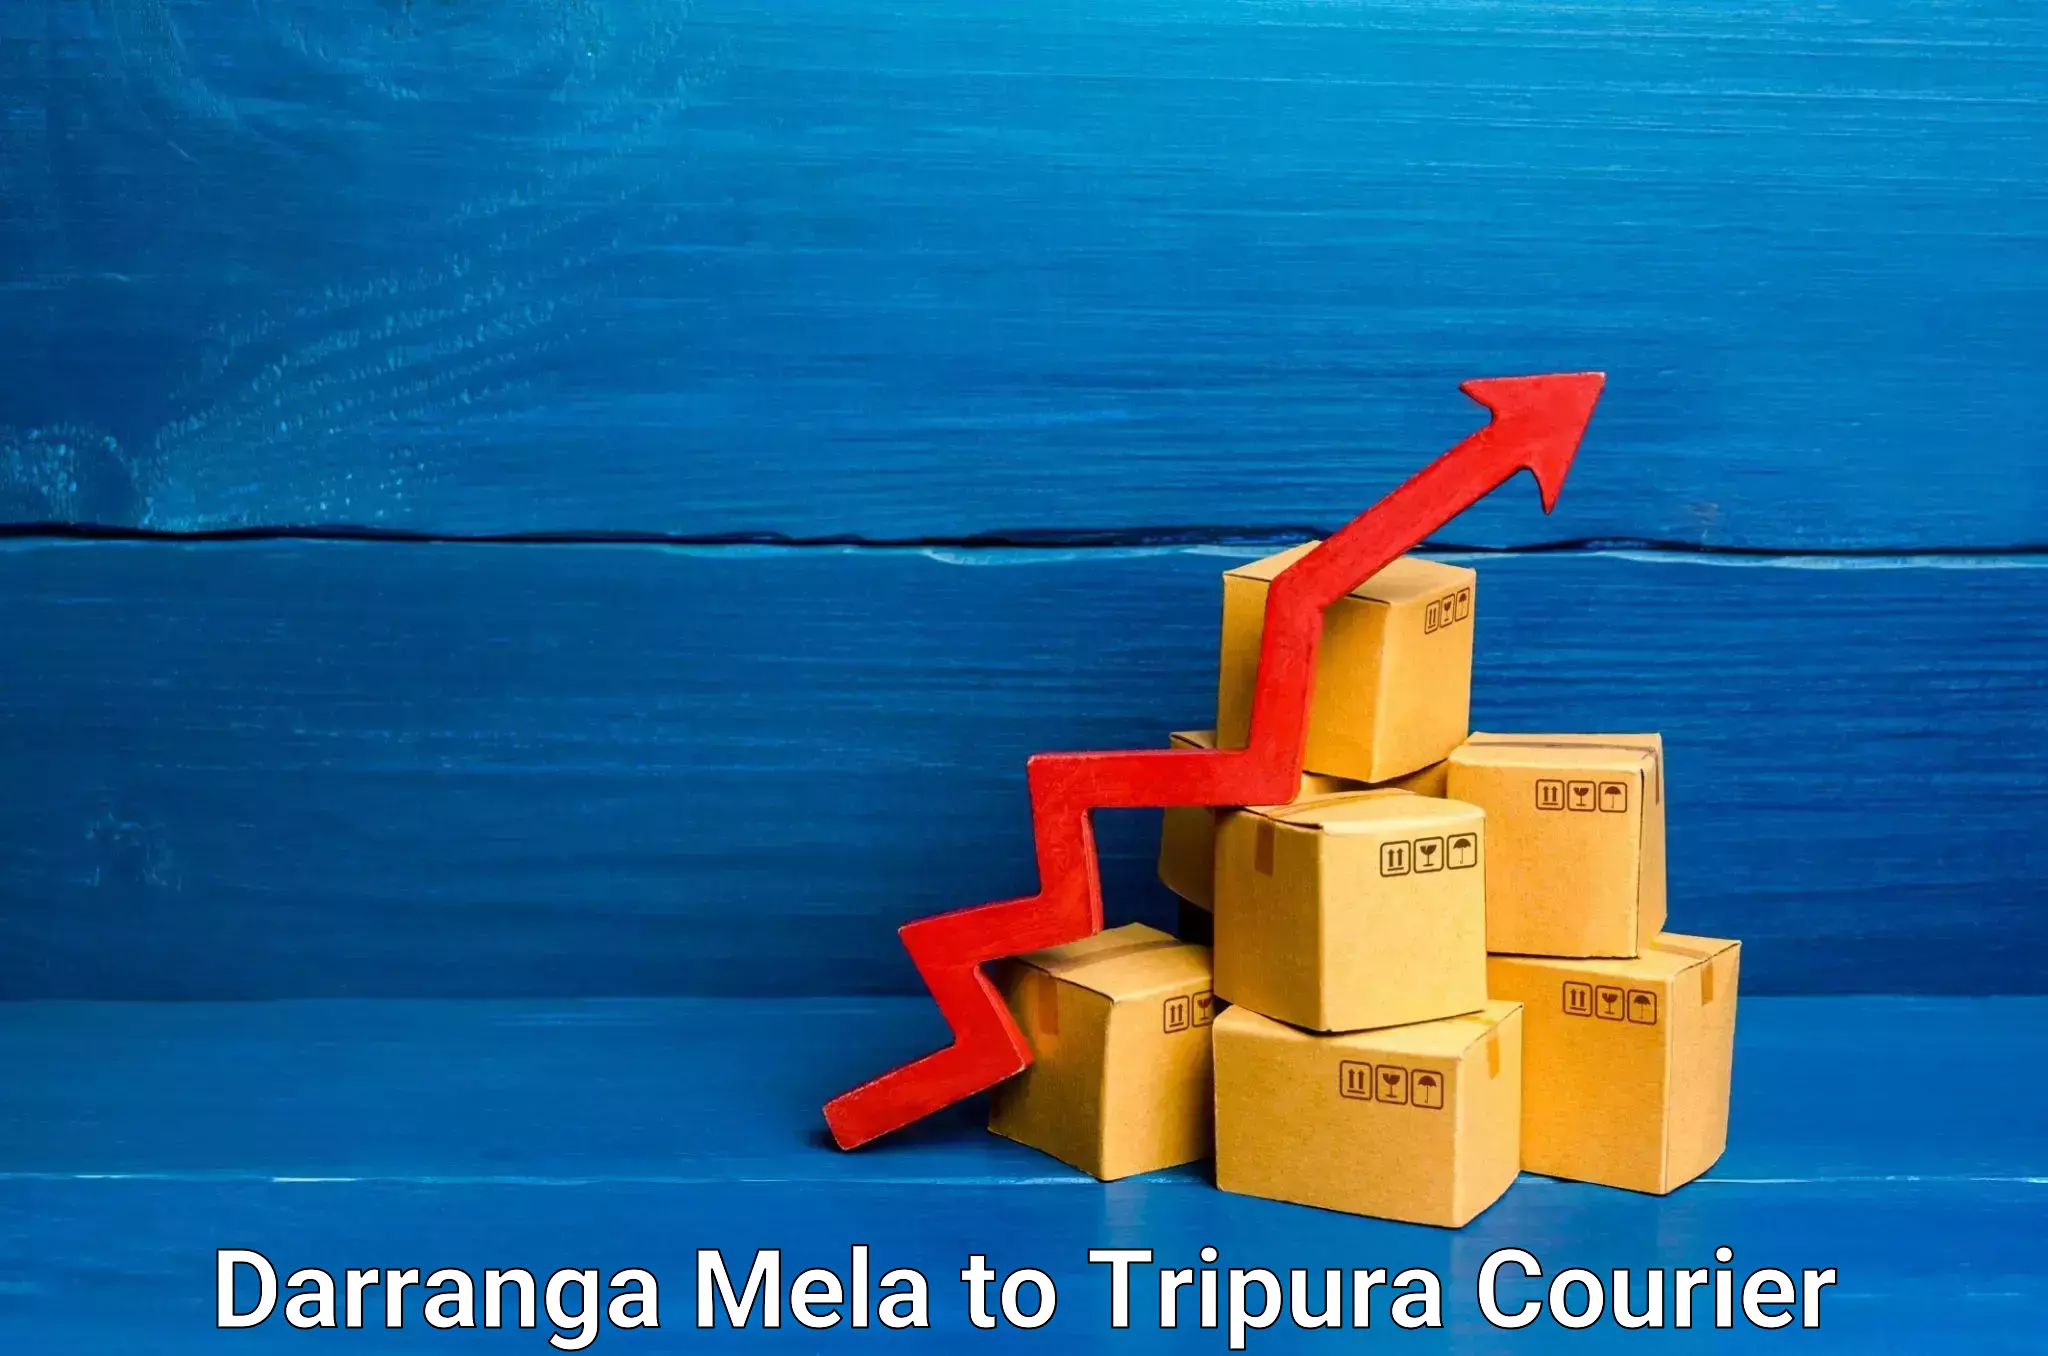 Digital courier platforms Darranga Mela to Udaipur Tripura